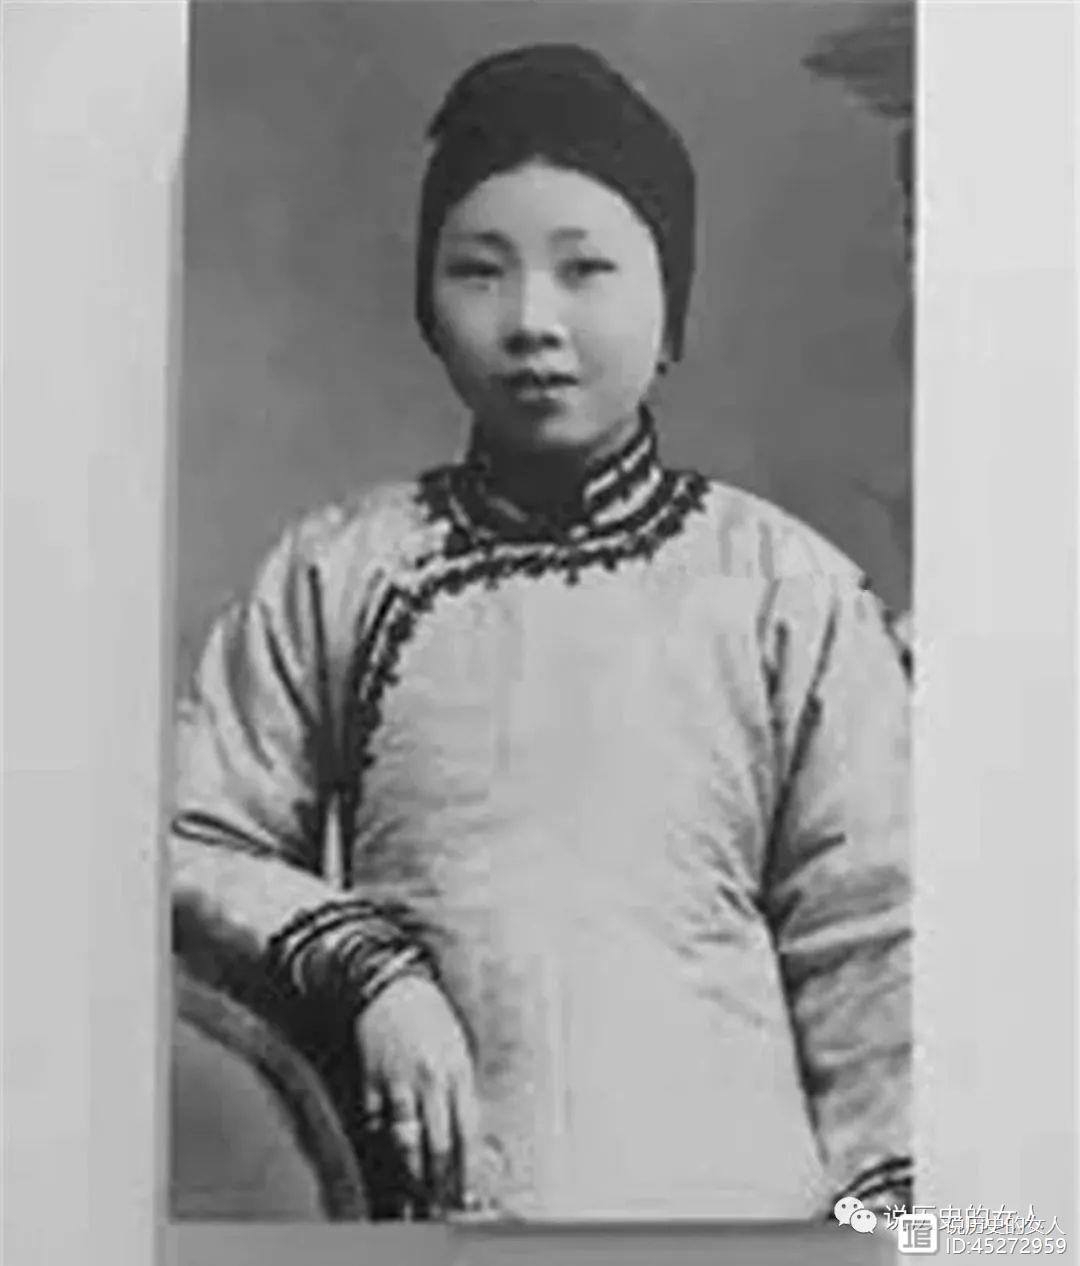 这就是章兰娟，一位几乎早已被人们忽略、甚至忘记的伟大的母亲，一位实际上为新中国做出了贡献的杰出女性。